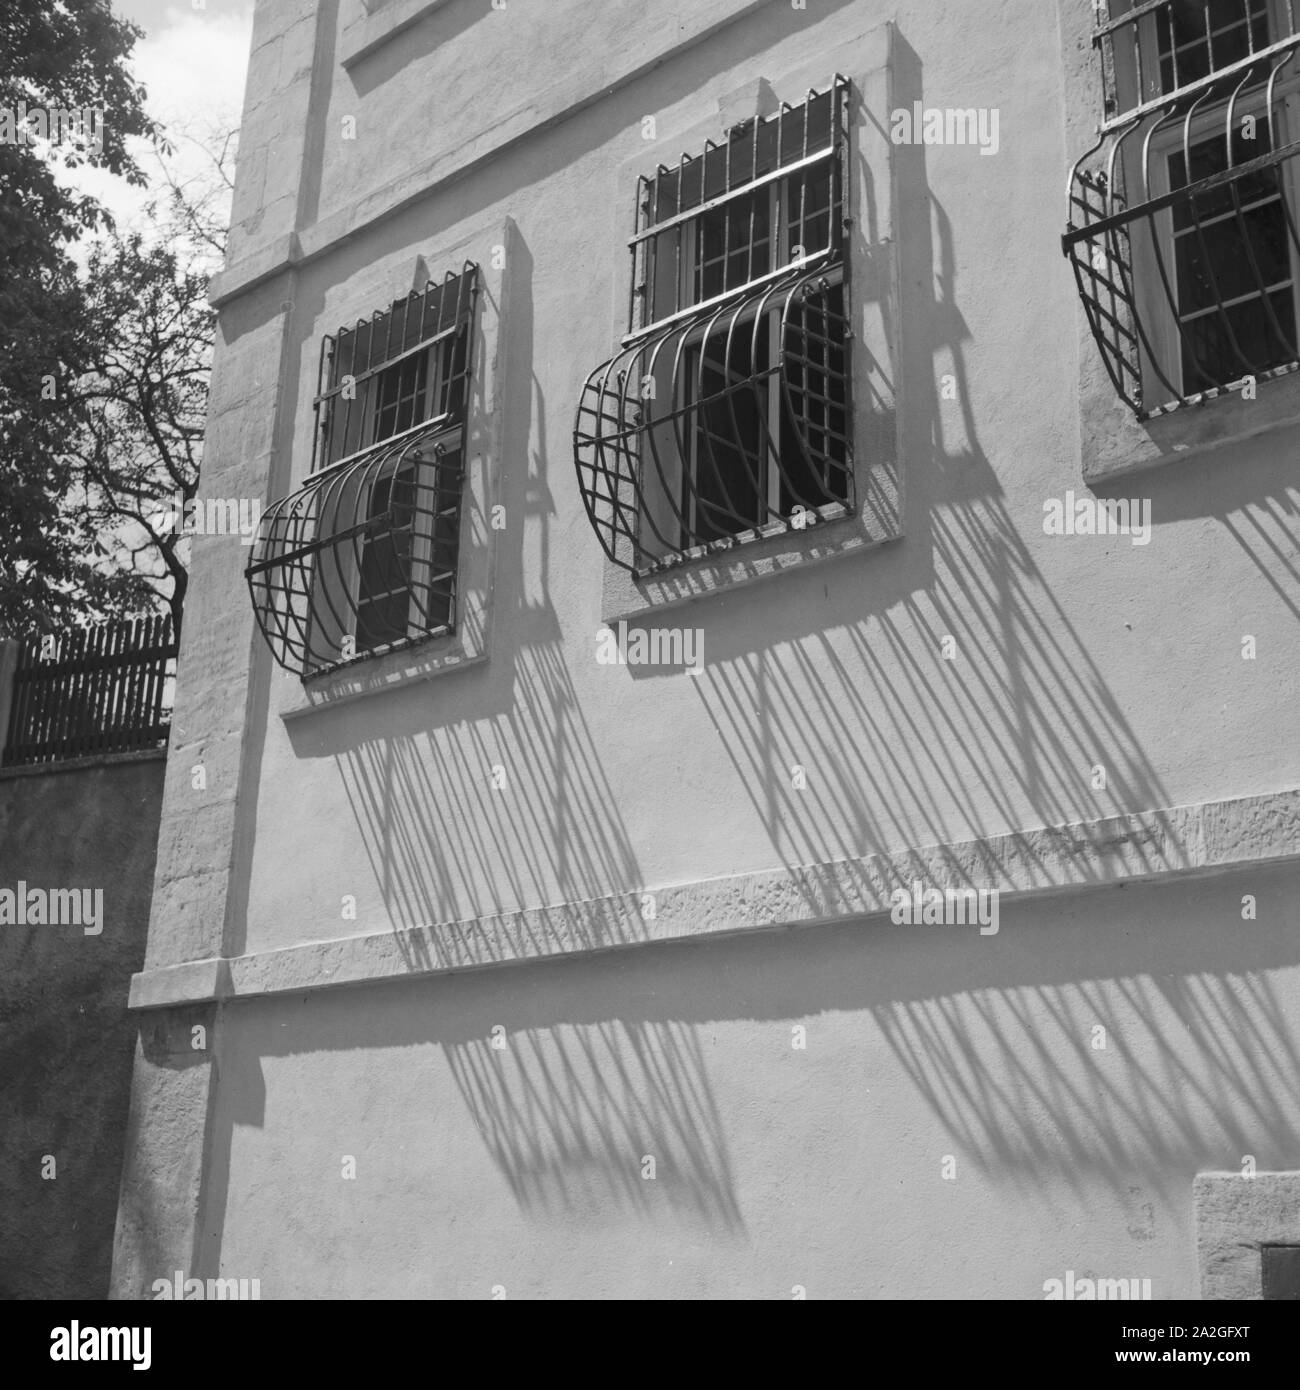 Fenster Vergitterte im Erdgeschoss eines Hauses, Deutschland 1930er Jahre. Ventanas con barrotes en el sótano de un edificio, Alemania 1930. Foto de stock